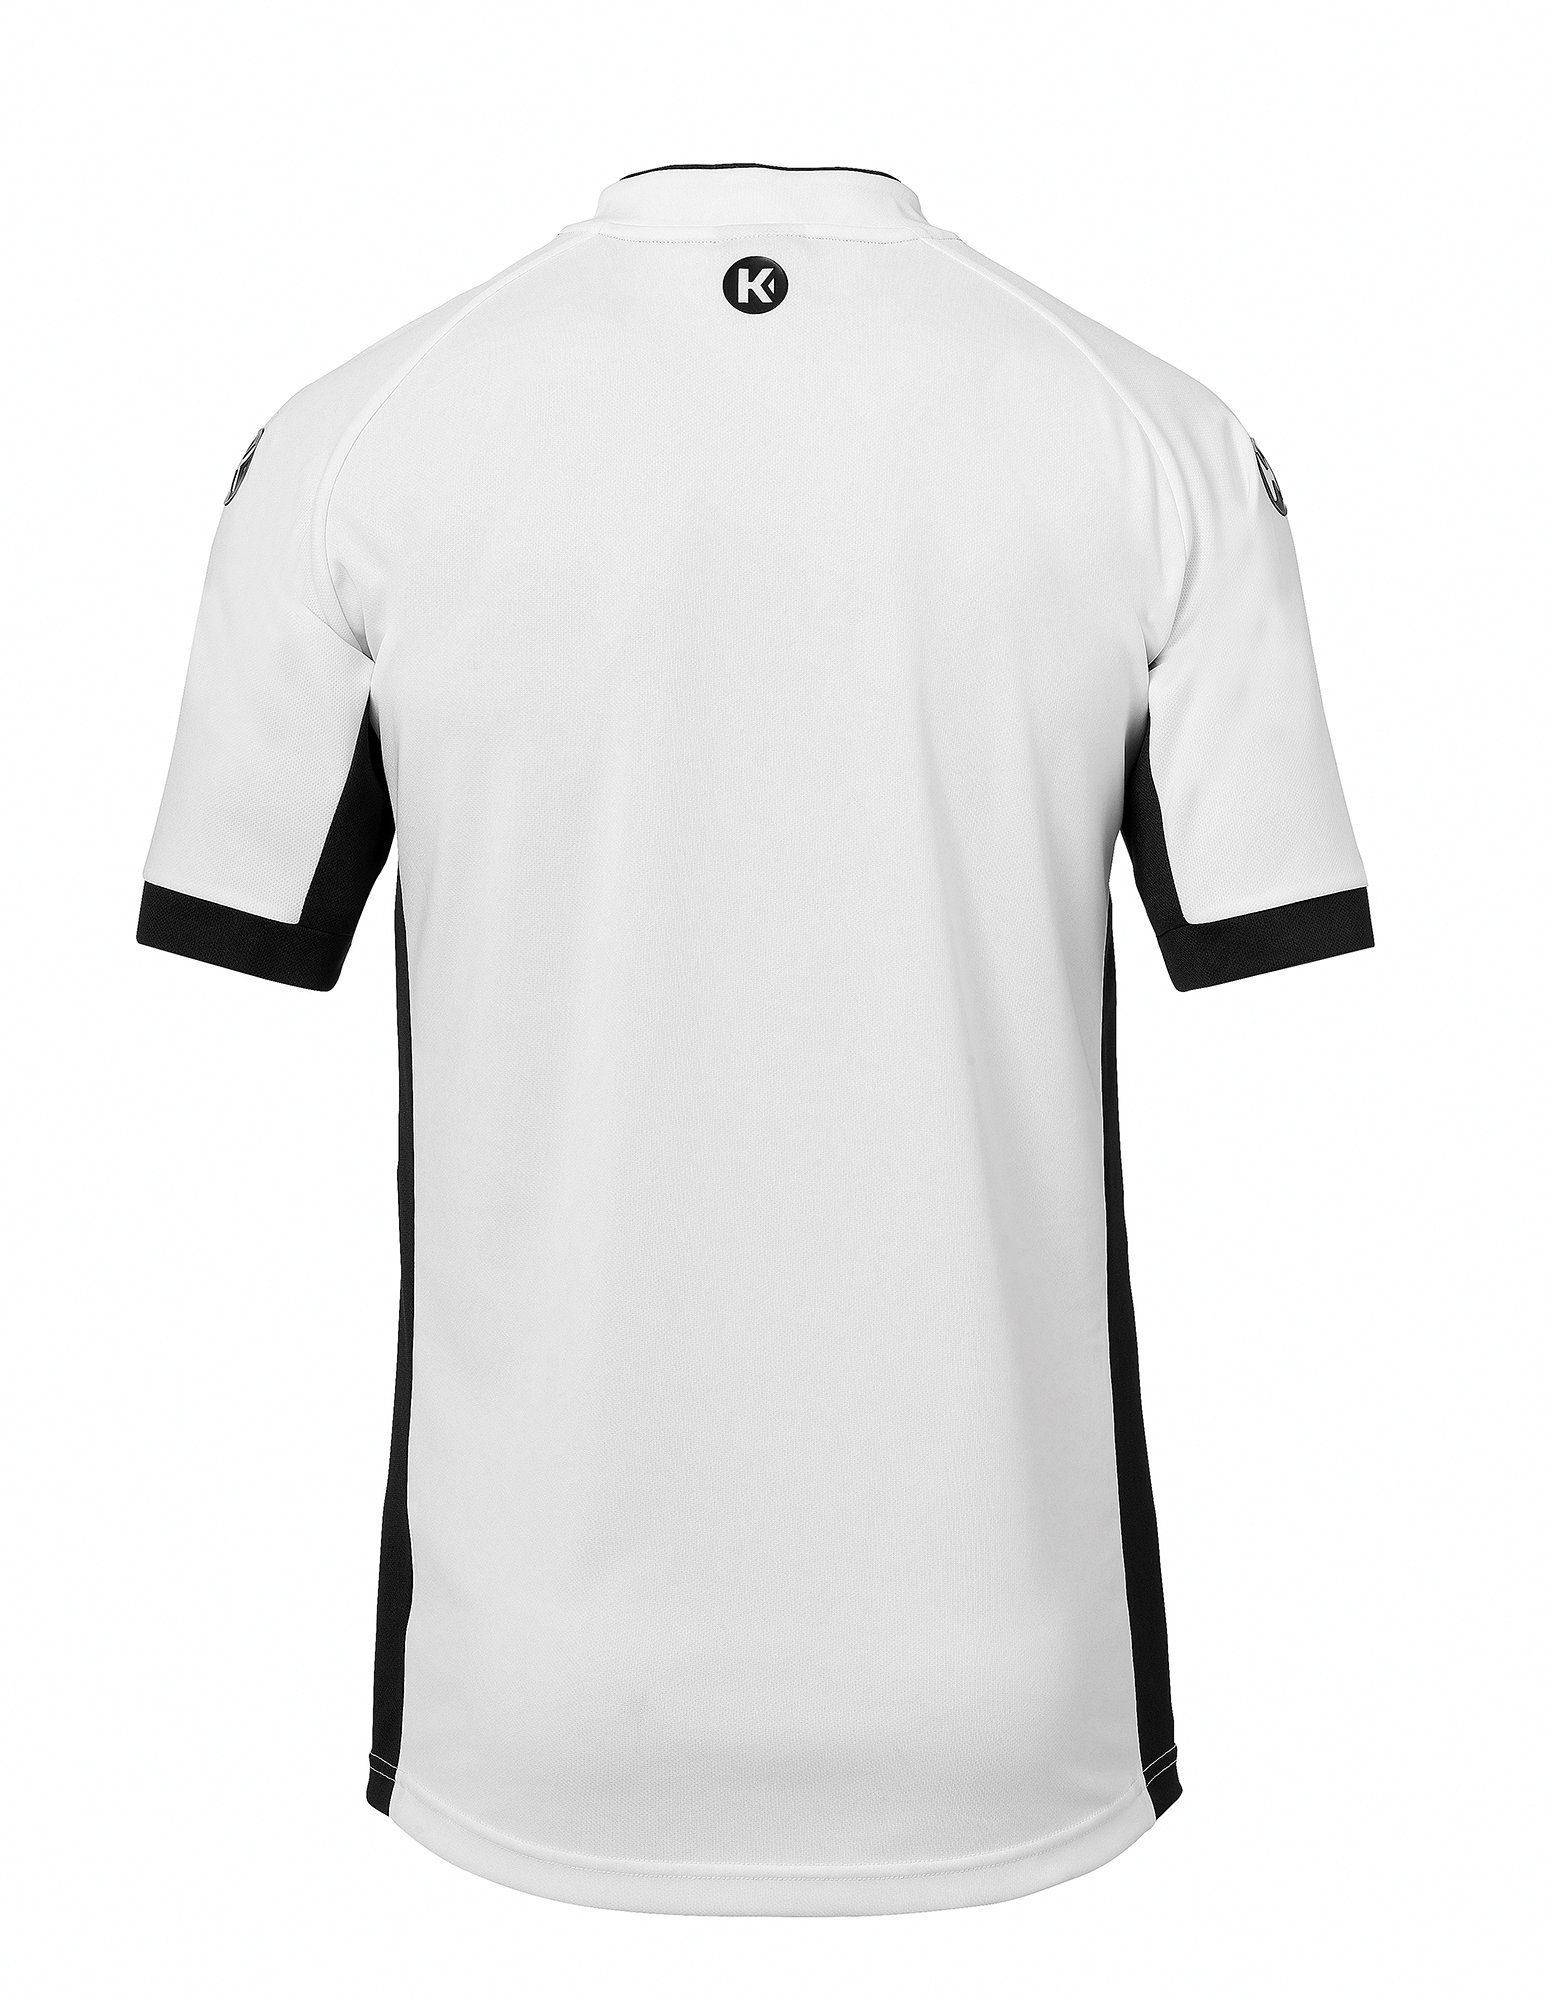 Kempa PRIME weiß/schwarz TRIKOT Trainingsshirt Shirt schnelltrocknend Kempa